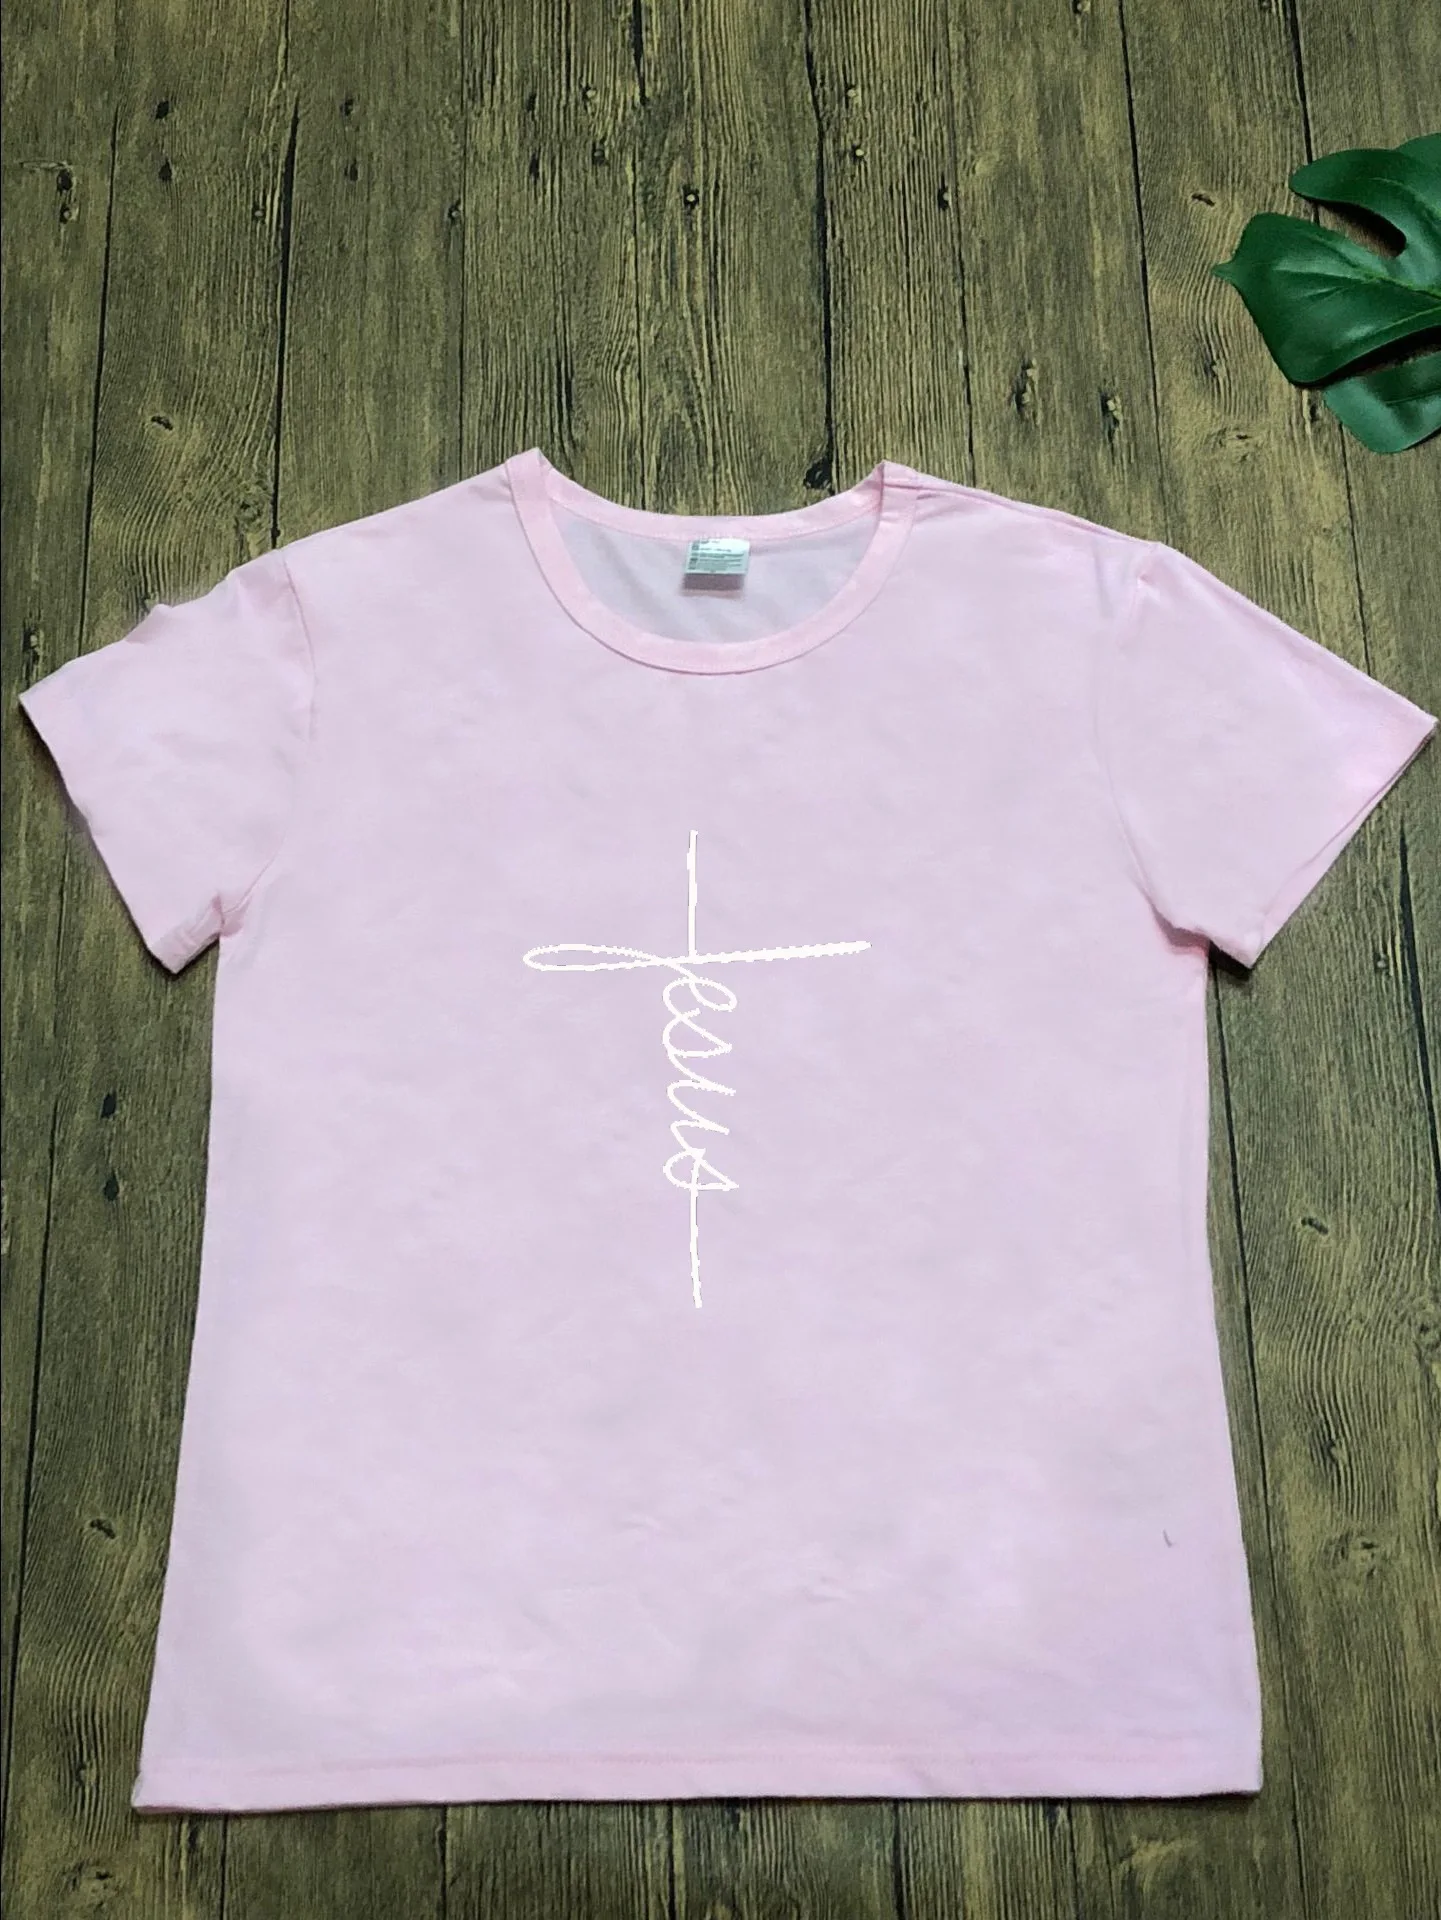 2019 женская рубашка Топ Хлопок Одежда E841